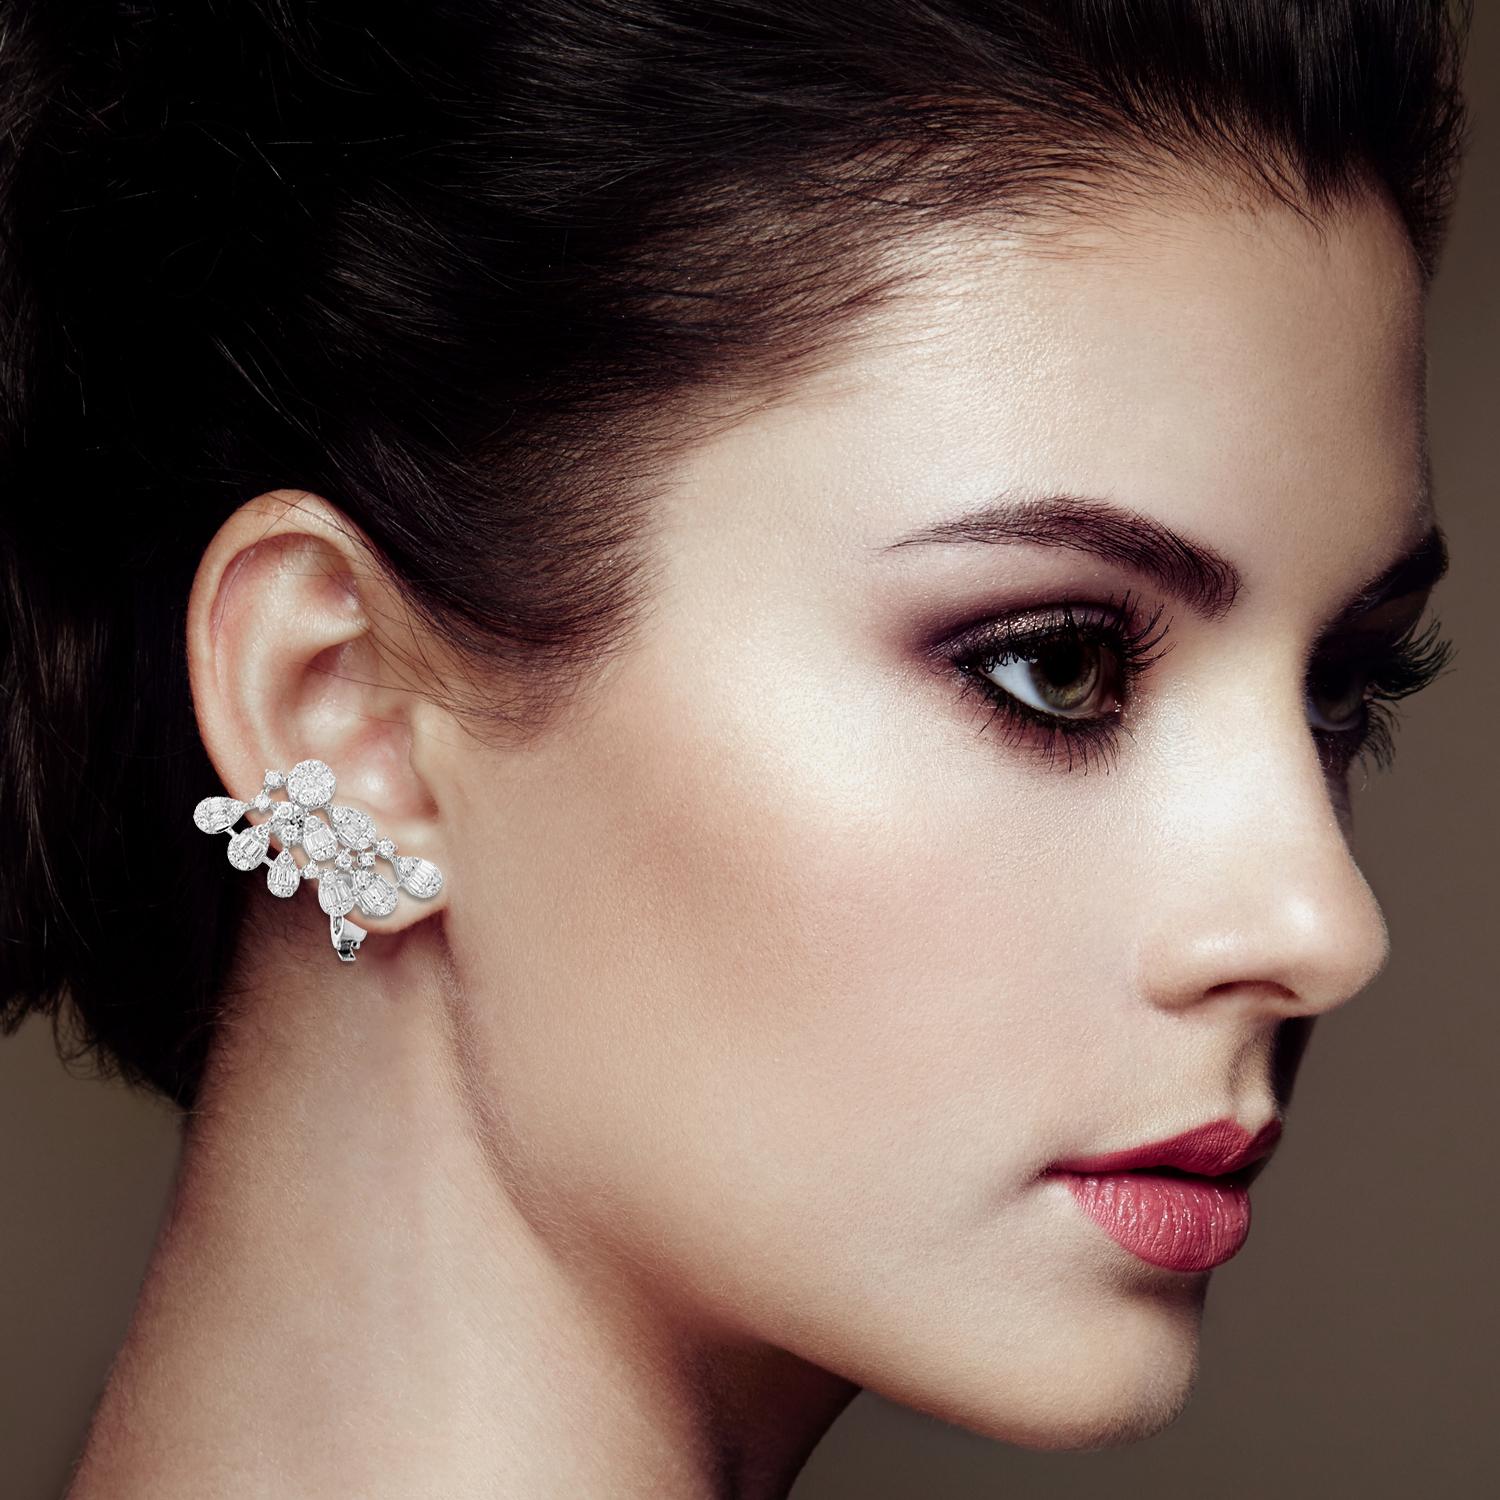 Modern 3 Carat Baguette Diamond Ear Cuff Earrings 18 Karat White Gold Handmade Jewelry For Sale